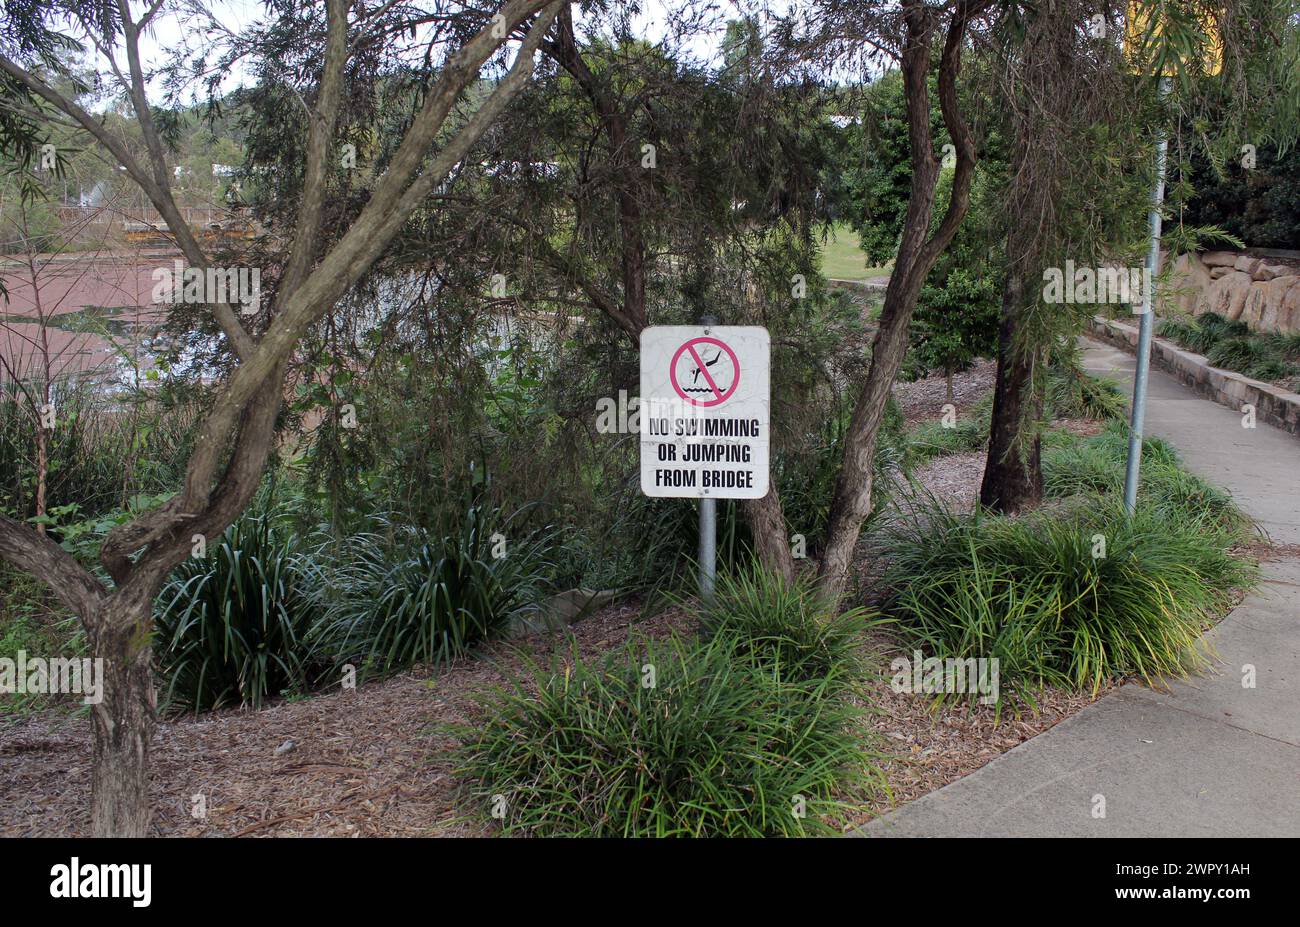 'Pas de baignade ou de plongée du pont' signe dans un parc avec des arbres et des plantes Banque D'Images